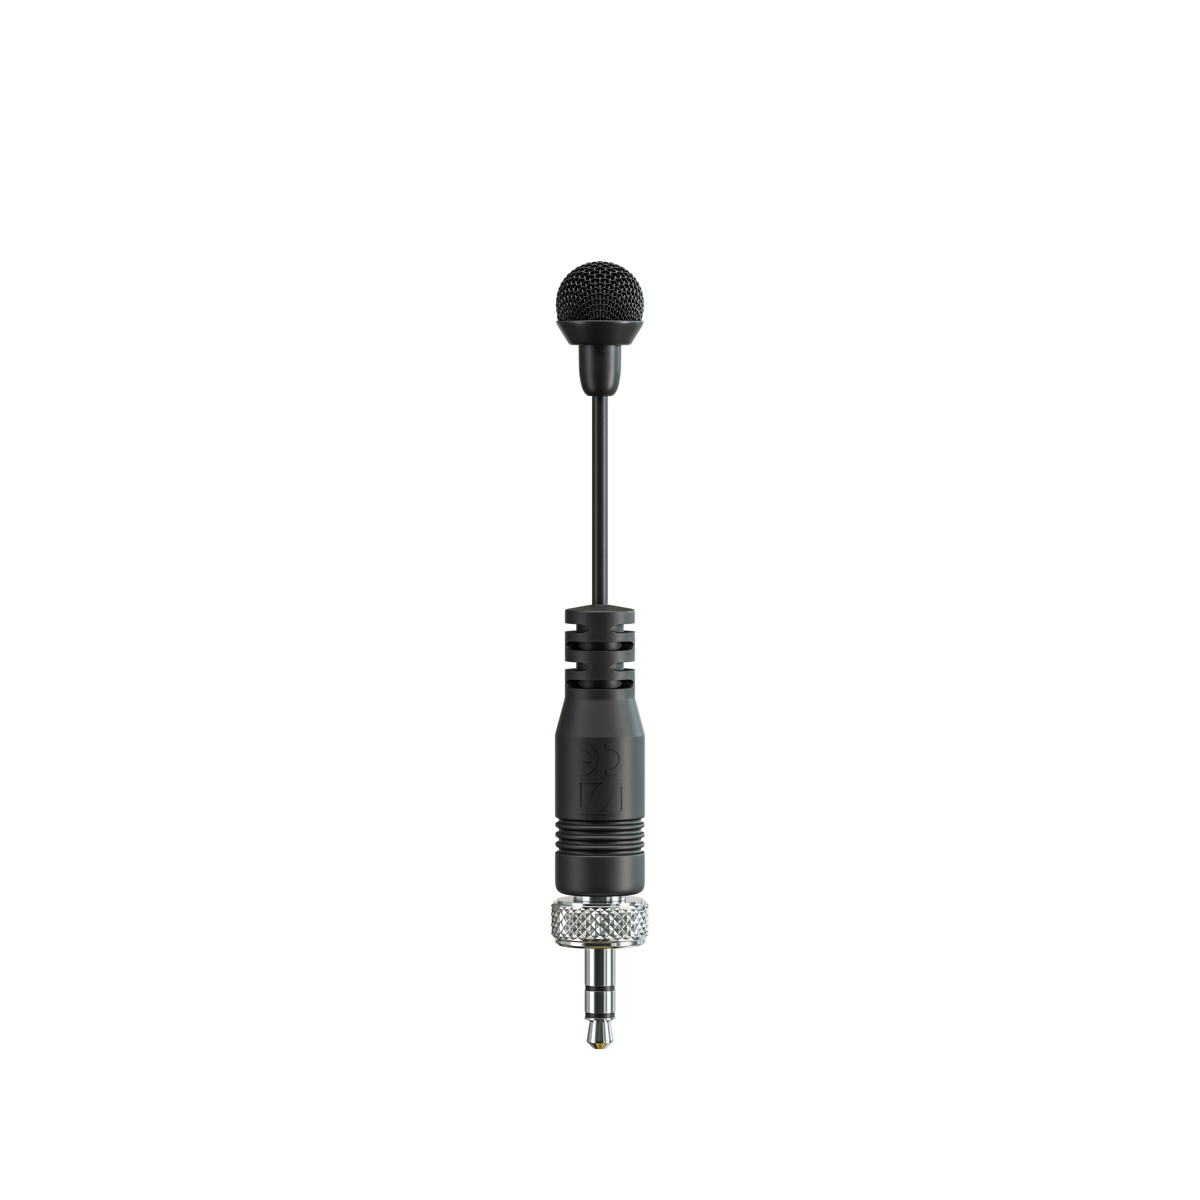 Das MKE mini mit Umbrella Diaphragm™, welches das Mikrofon vor Schweiß schützt.